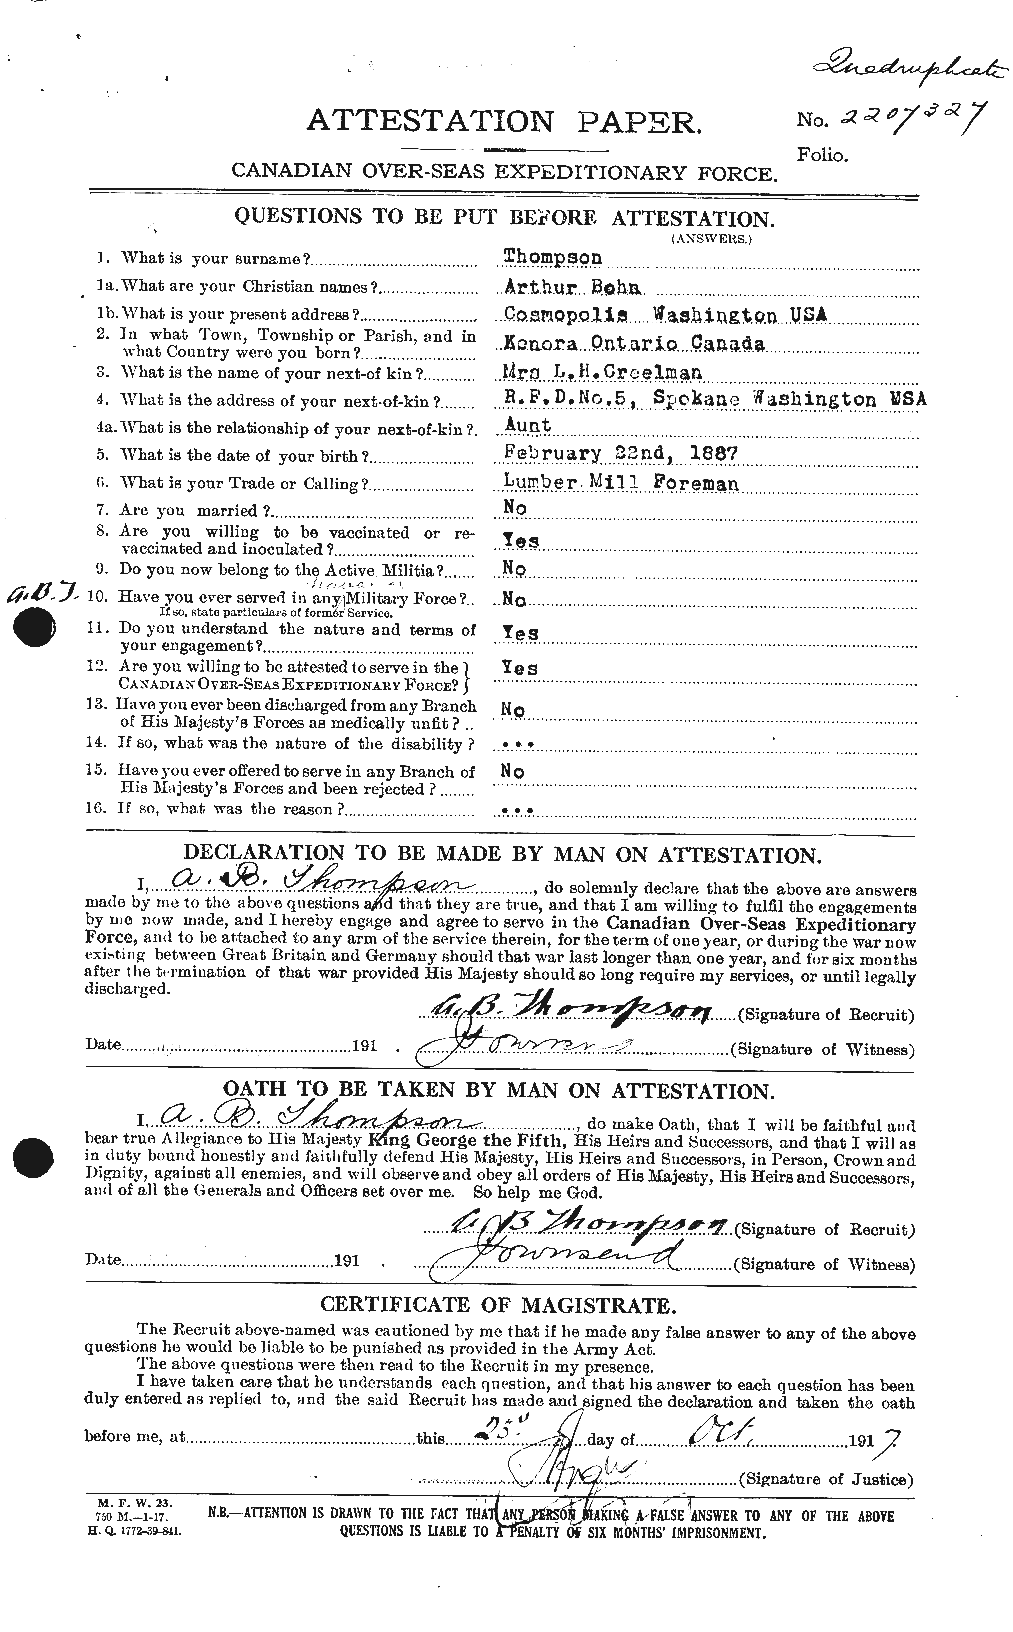 Dossiers du Personnel de la Première Guerre mondiale - CEC 630287a